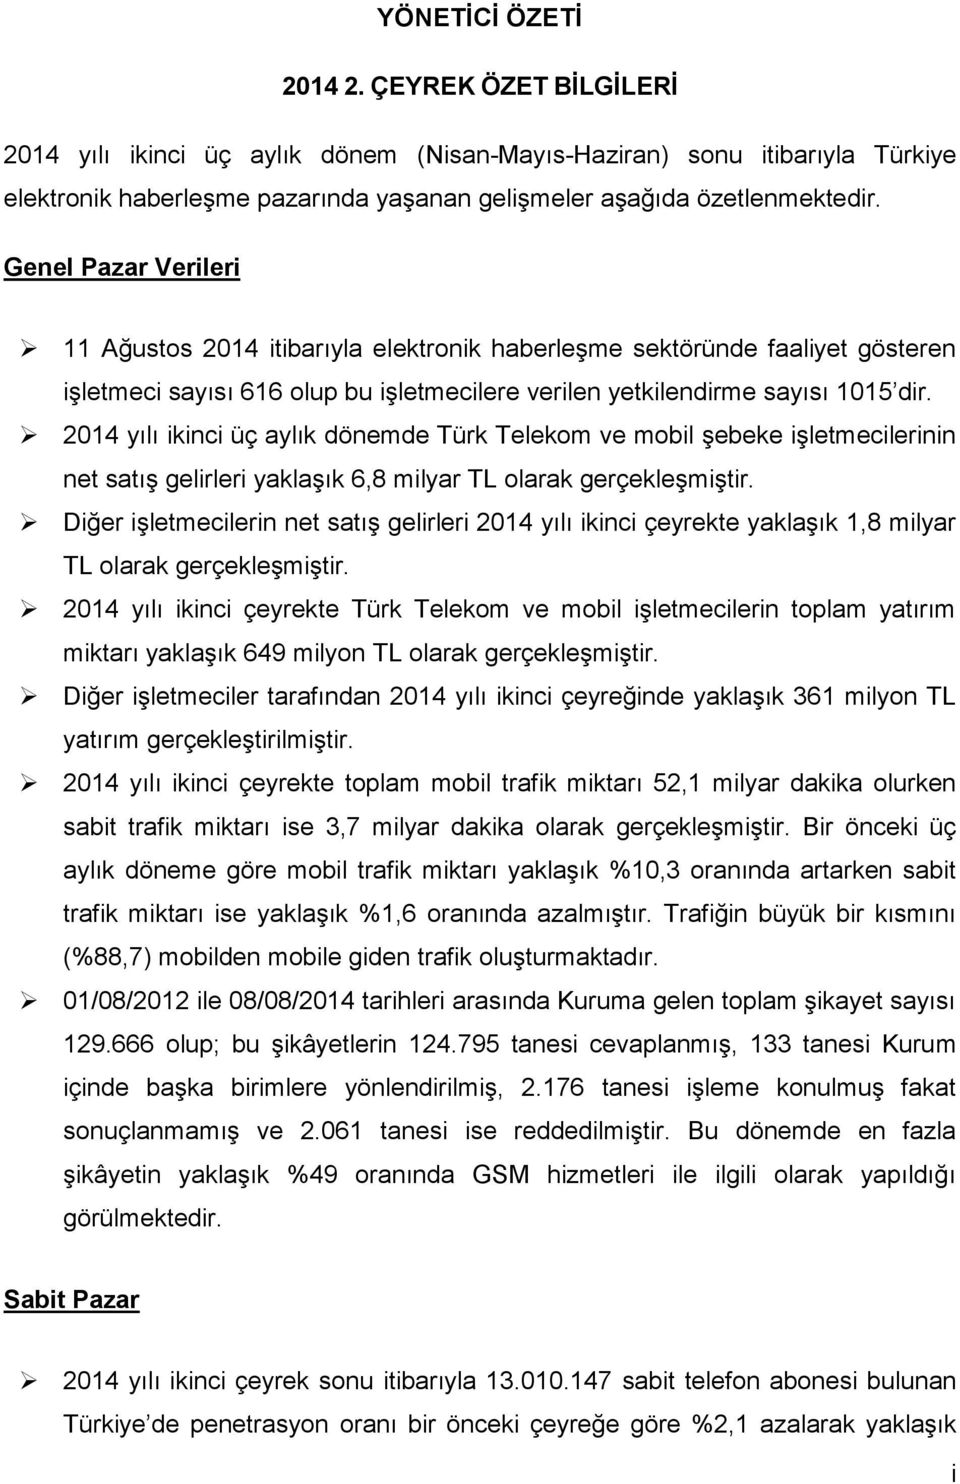 214 yılı ikinci üç aylık dönemde Türk Telekom ve mobil şebeke işletmecilerinin net satış gelirleri yaklaşık 6,8 milyar TL olarak gerçekleşmiştir.